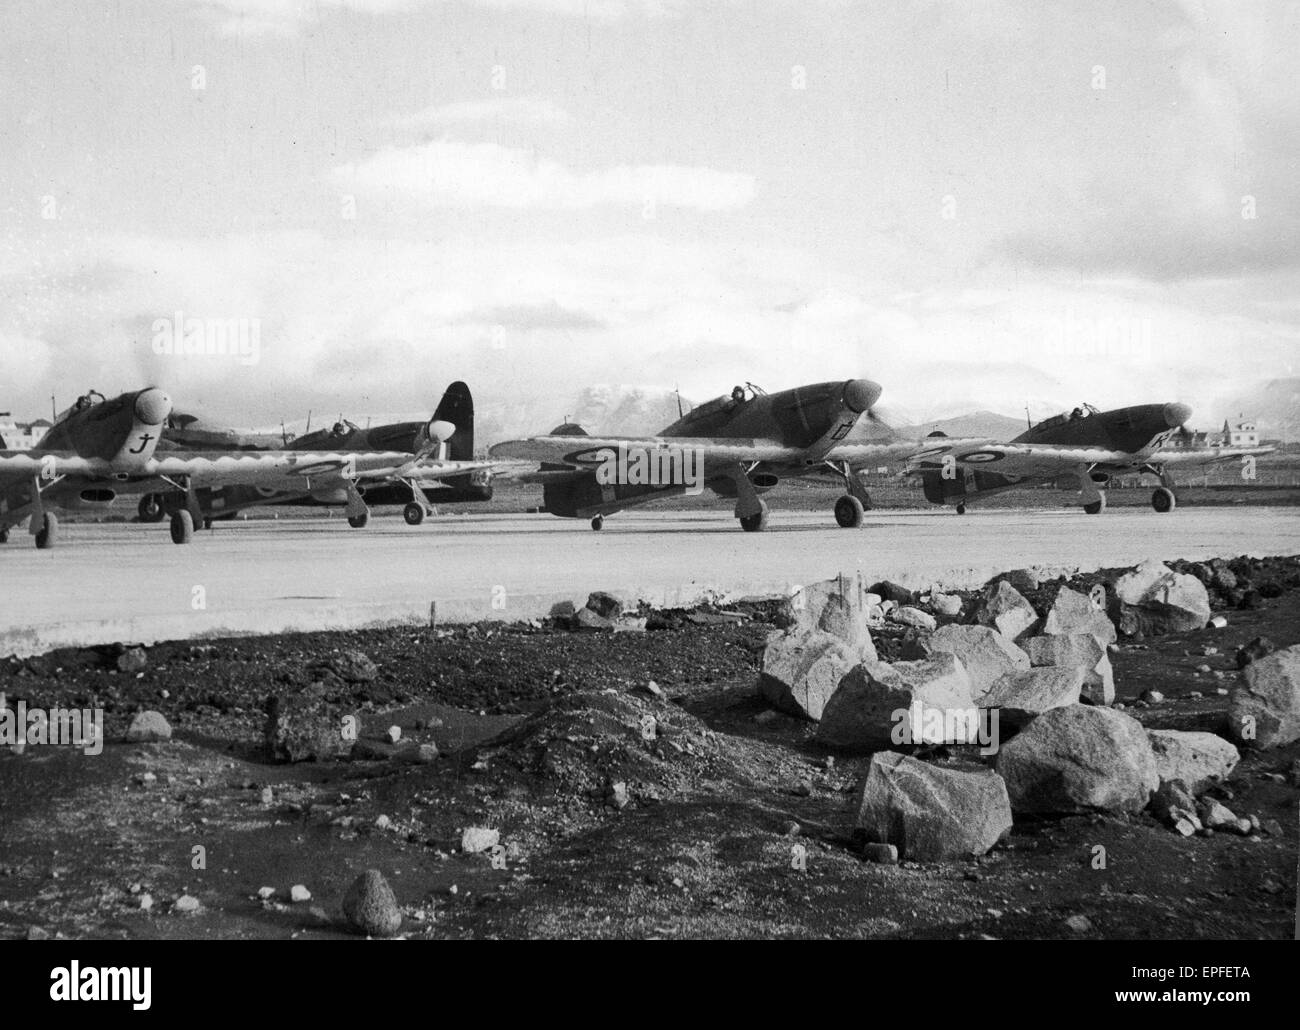 Phases d'affichage série d'activités de la RAF en Islande, avant-poste principal de leurs efforts dans la bataille de l'Atlantique, où les avions de chasse britanniques jouent un rôle important. L'image montre une ligne d'ouragans sur le point de décoller. Décembre 1941 Banque D'Images